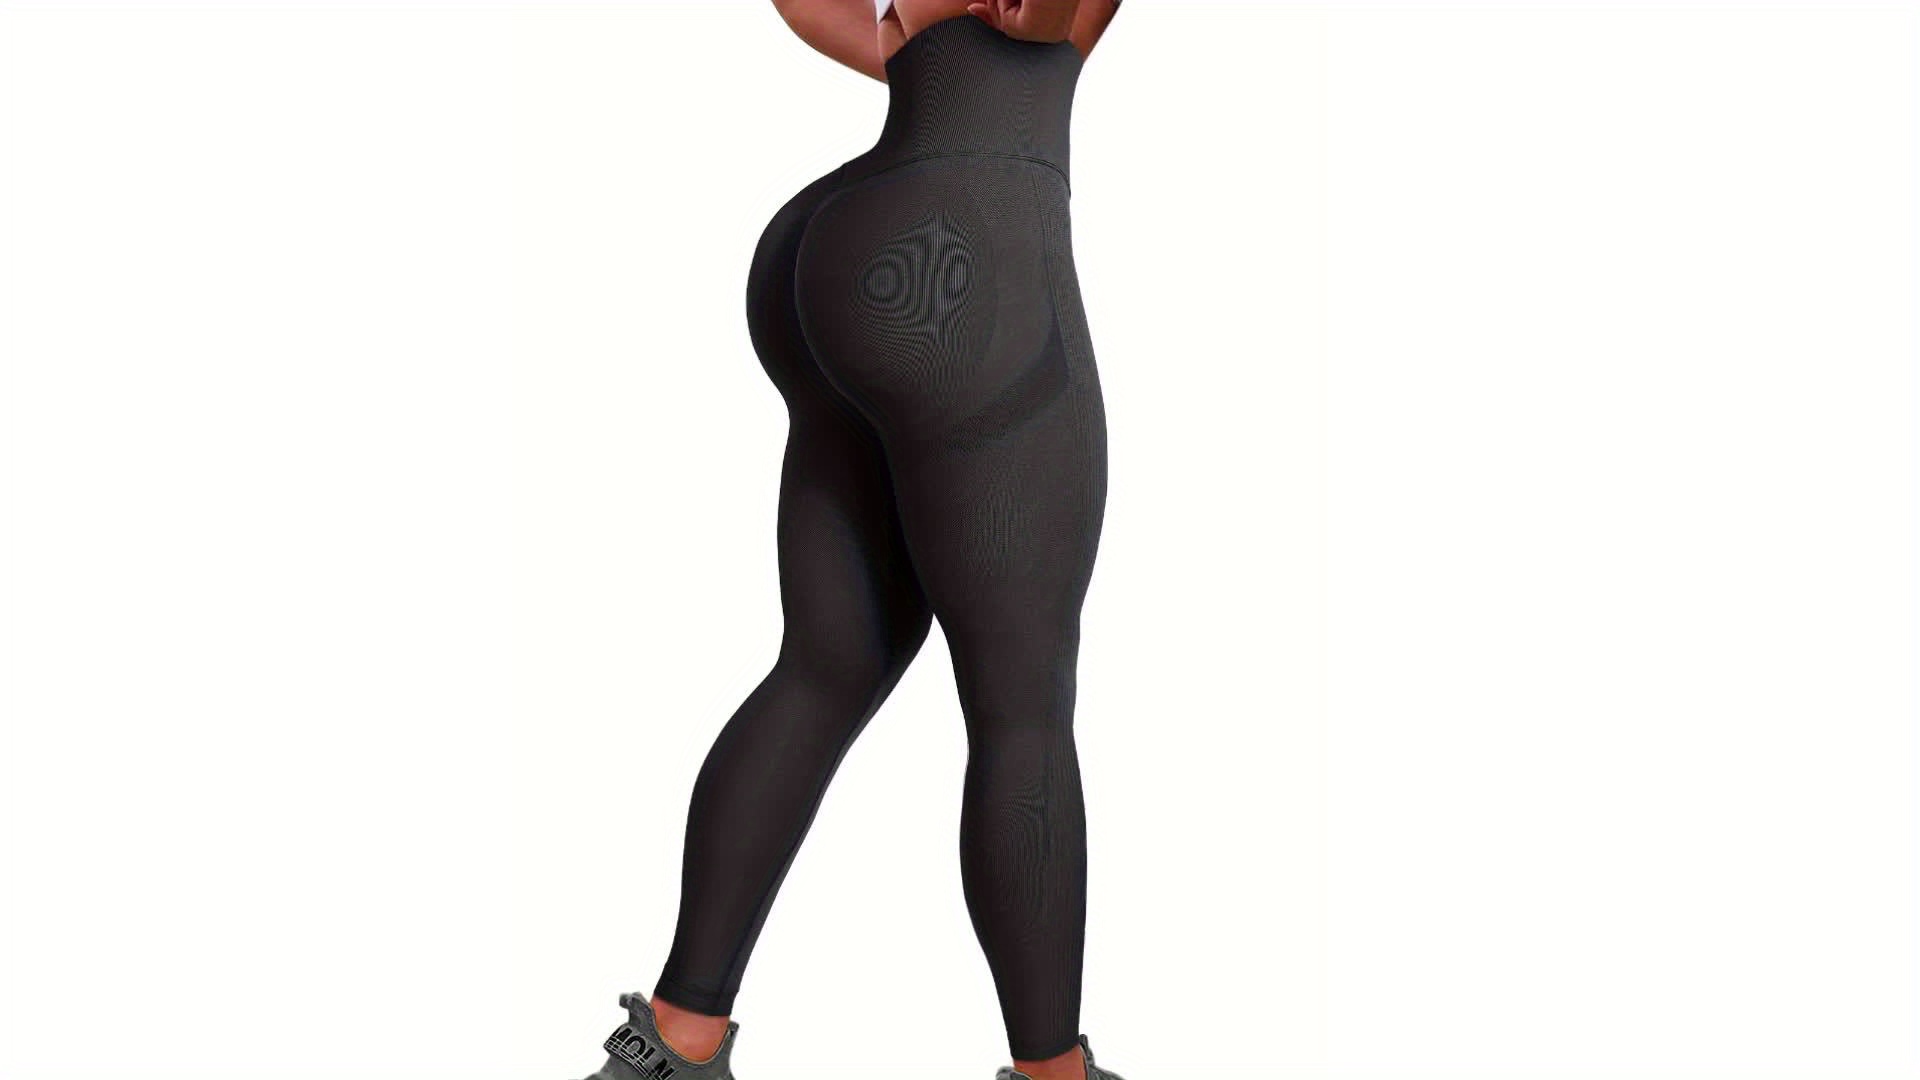 COMFREE Womens Yoga Pants Seamless High Waist Butt Lifting Squat